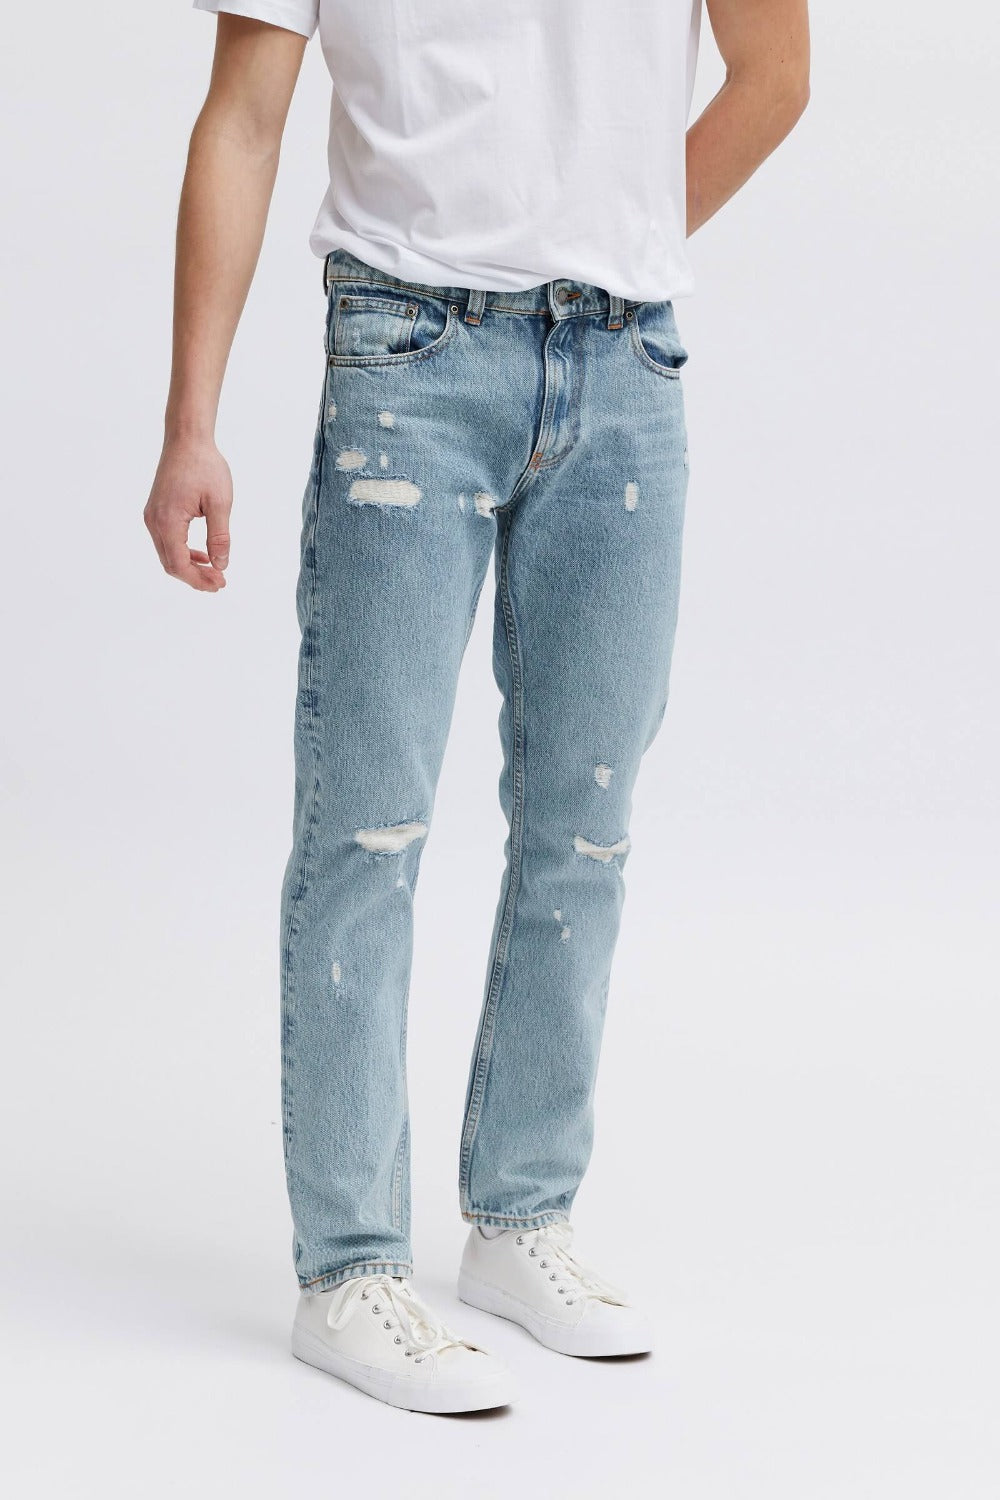 distressed denim jeans, organic and vegan 